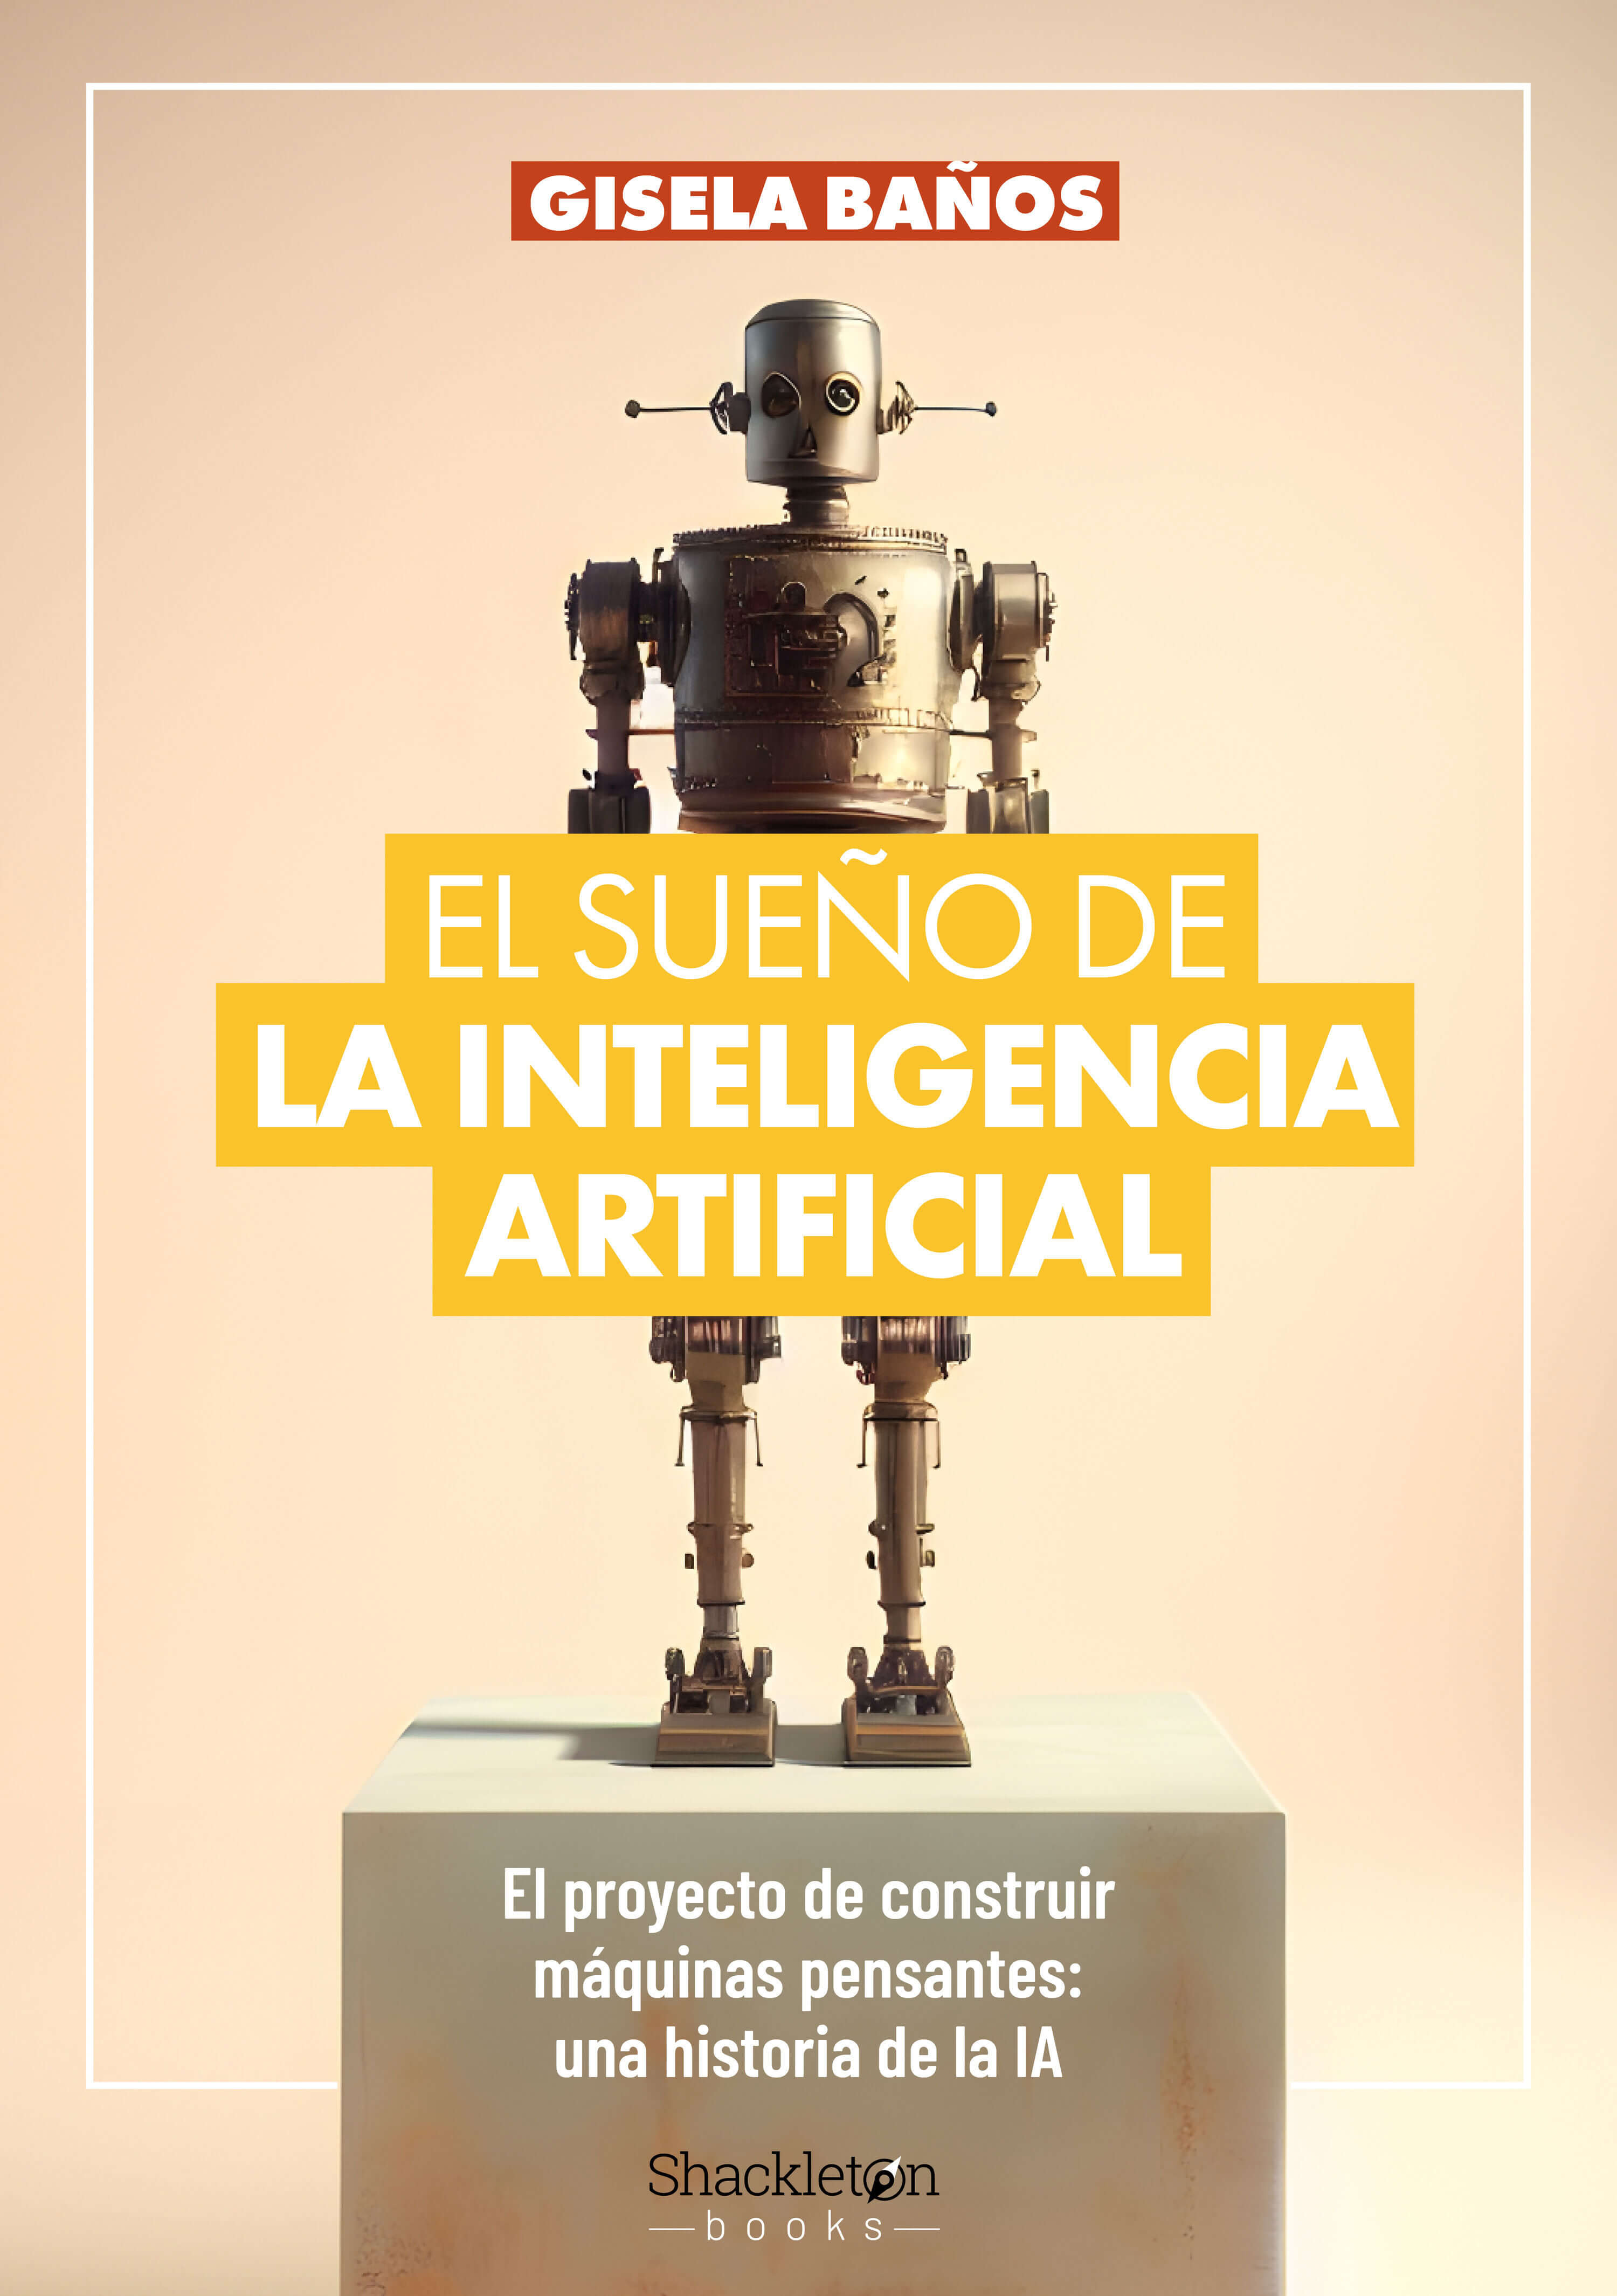 El sueño de la inteligencia artificial, de Gisela Baños